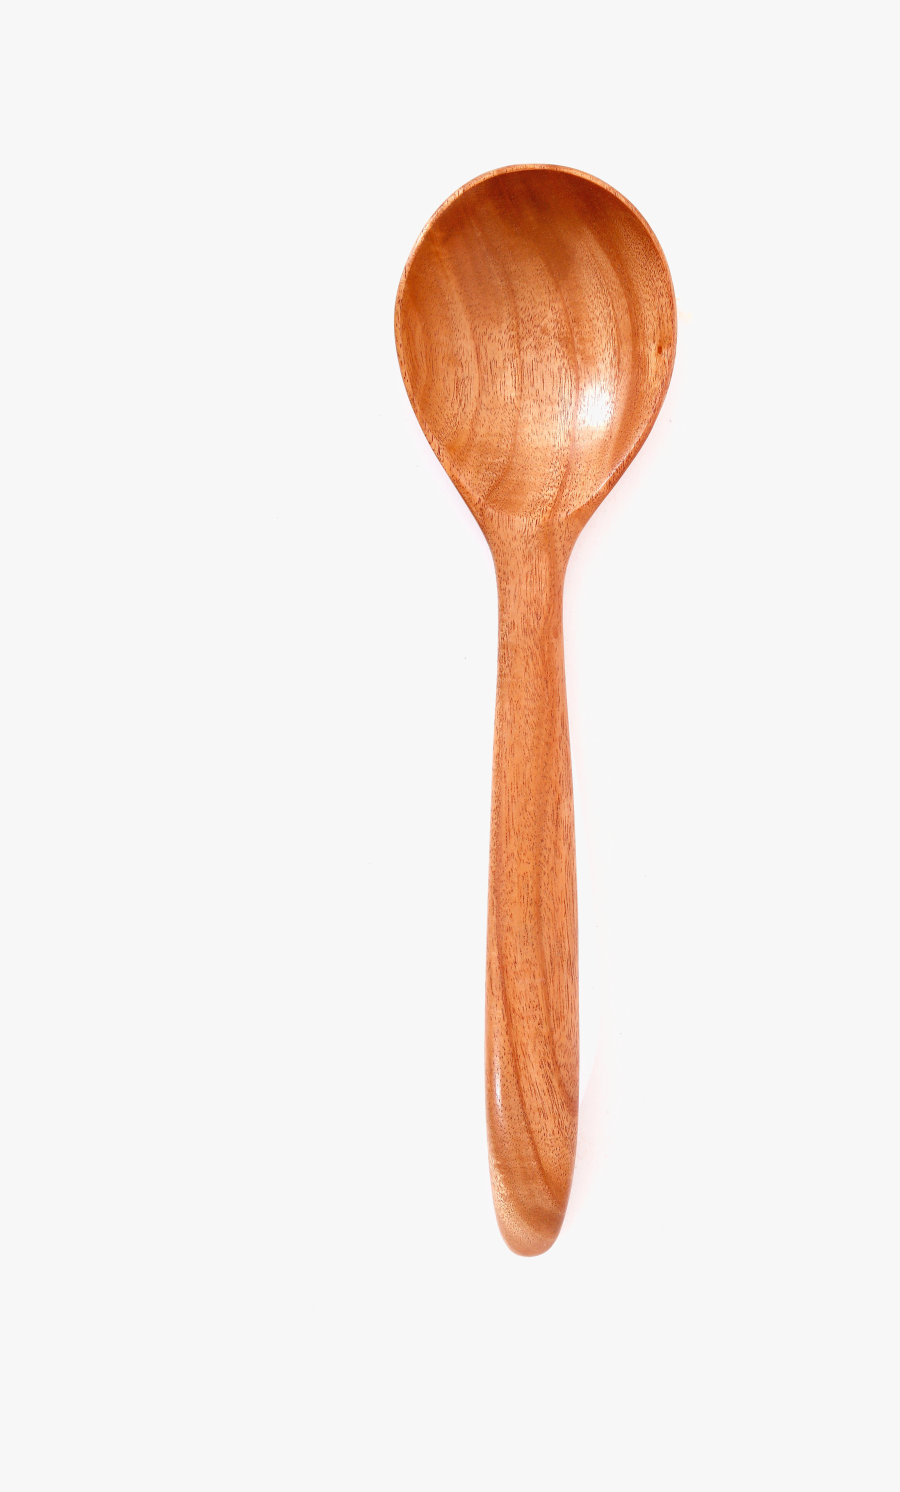 Ladle Transparent Png - Wooden Spoon, Transparent Clipart